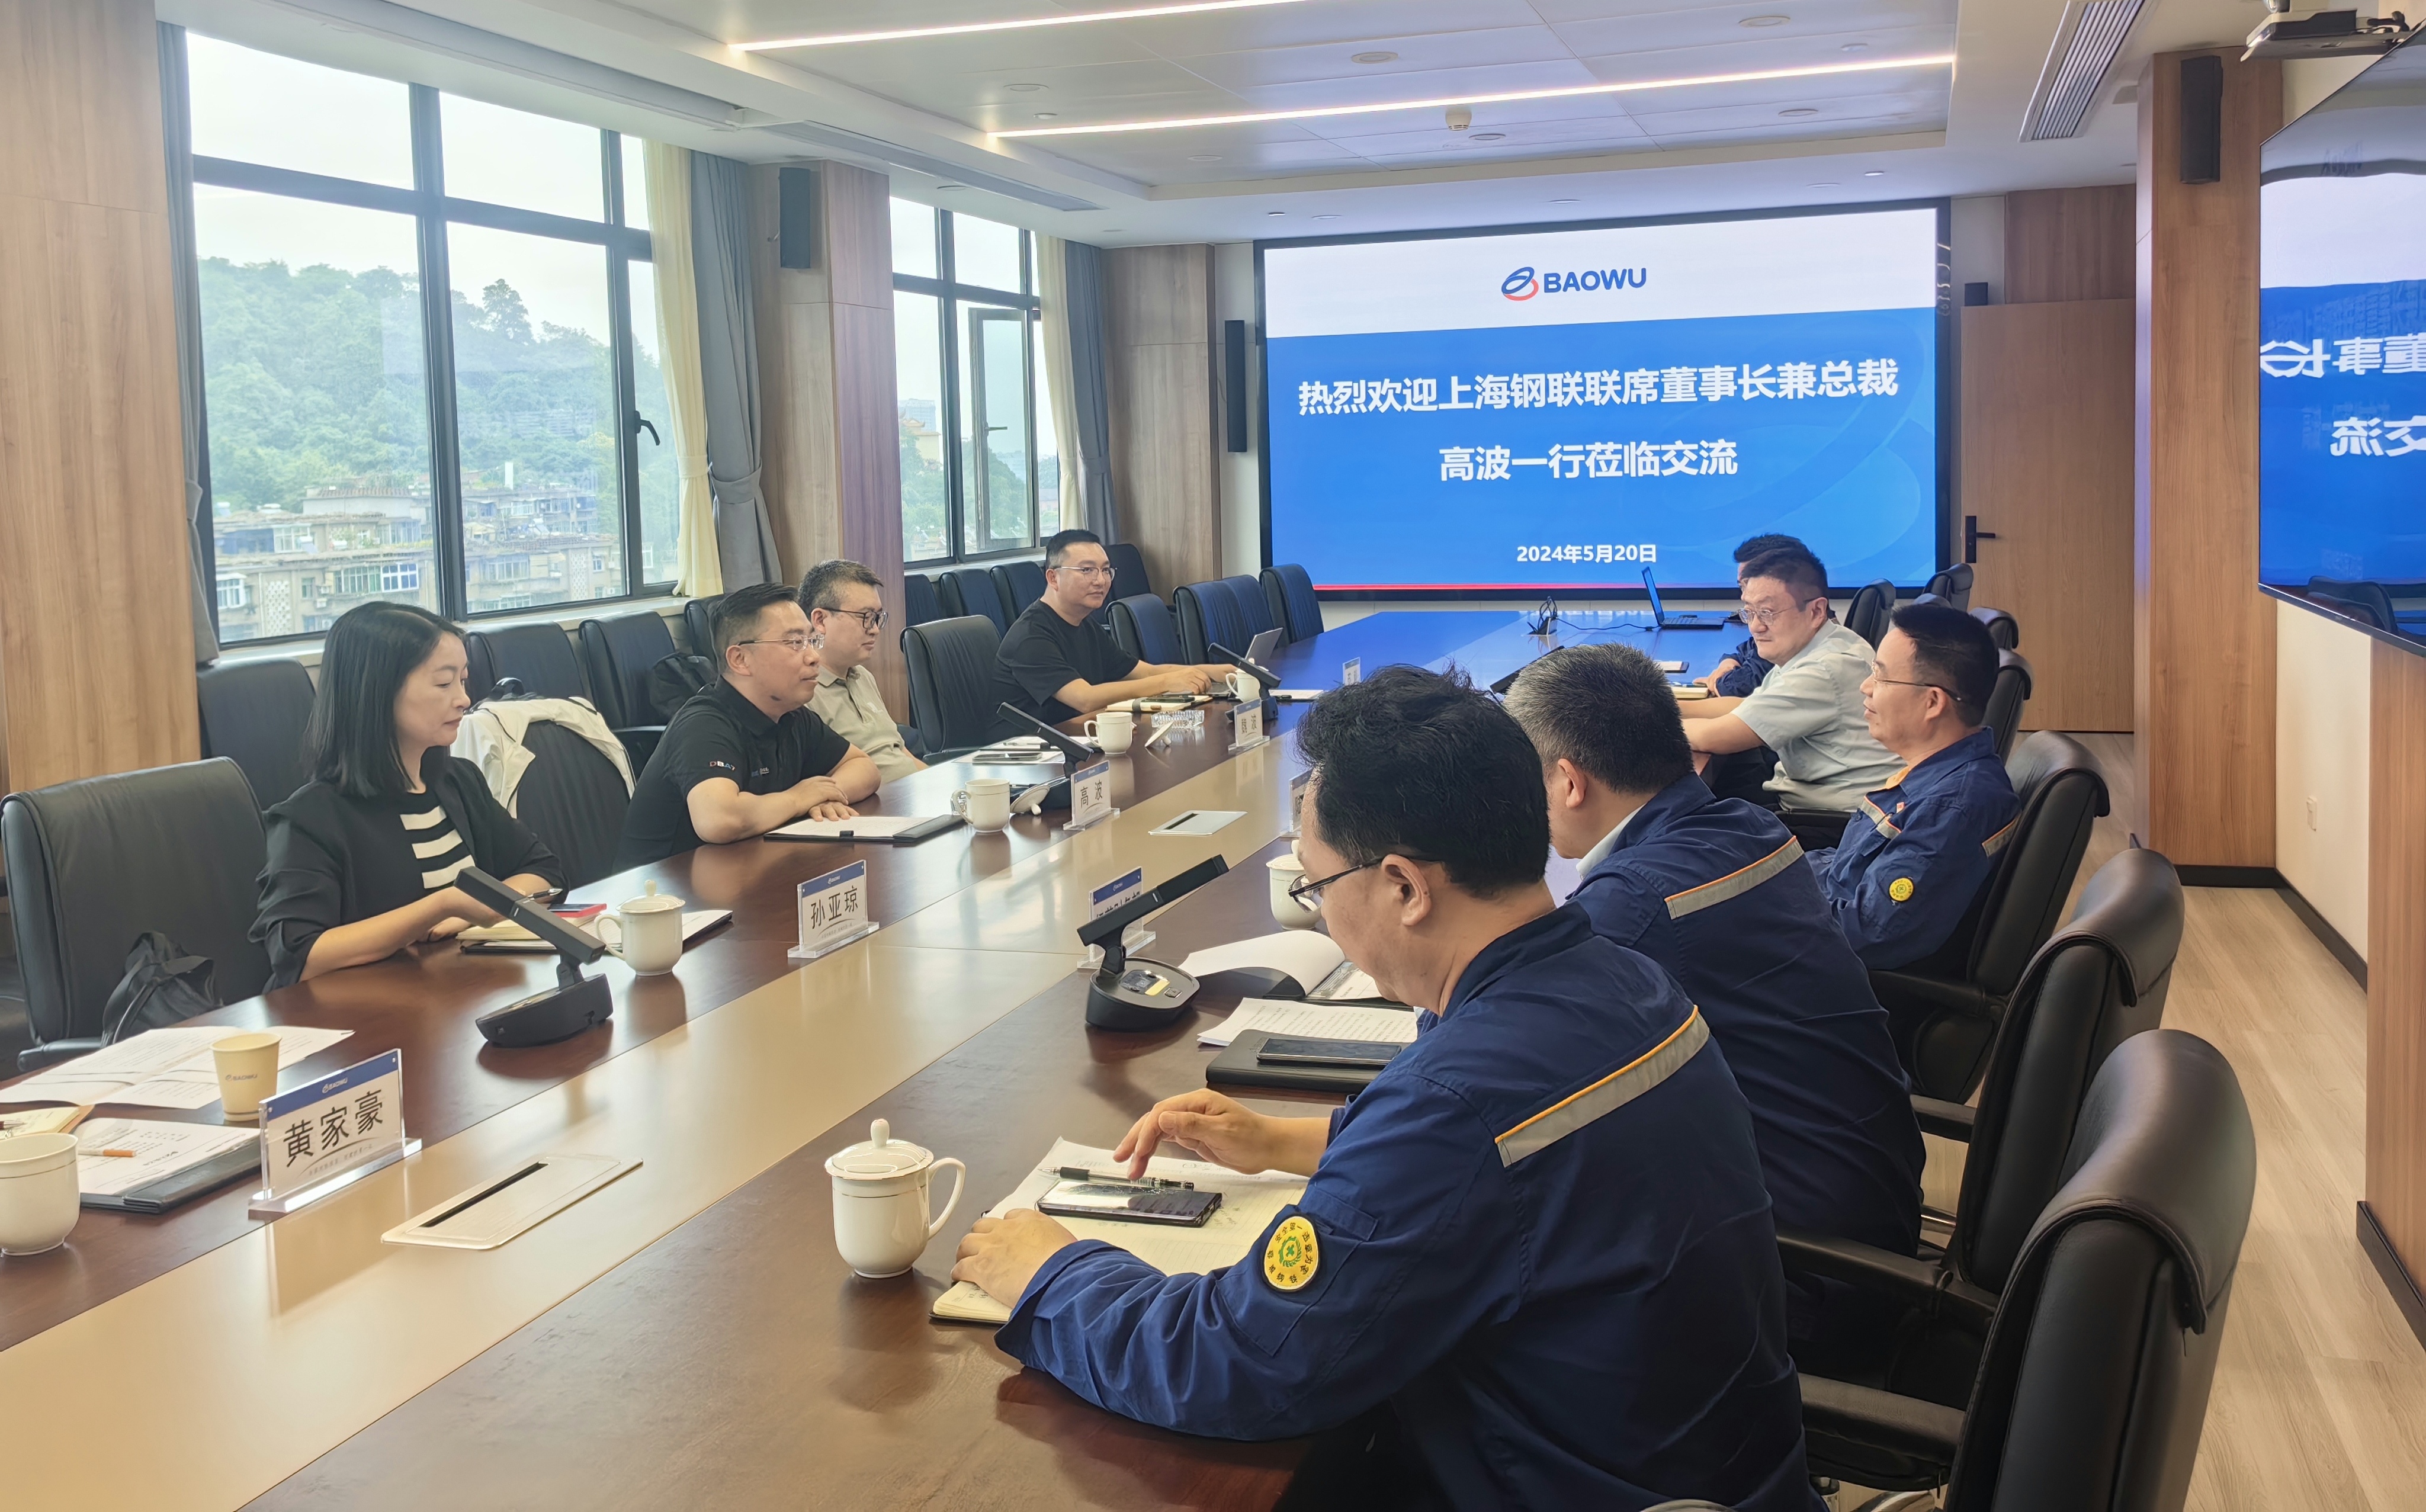 上海钢联联席董事长高波一行拜访宝武集团鄂城钢铁有限公司